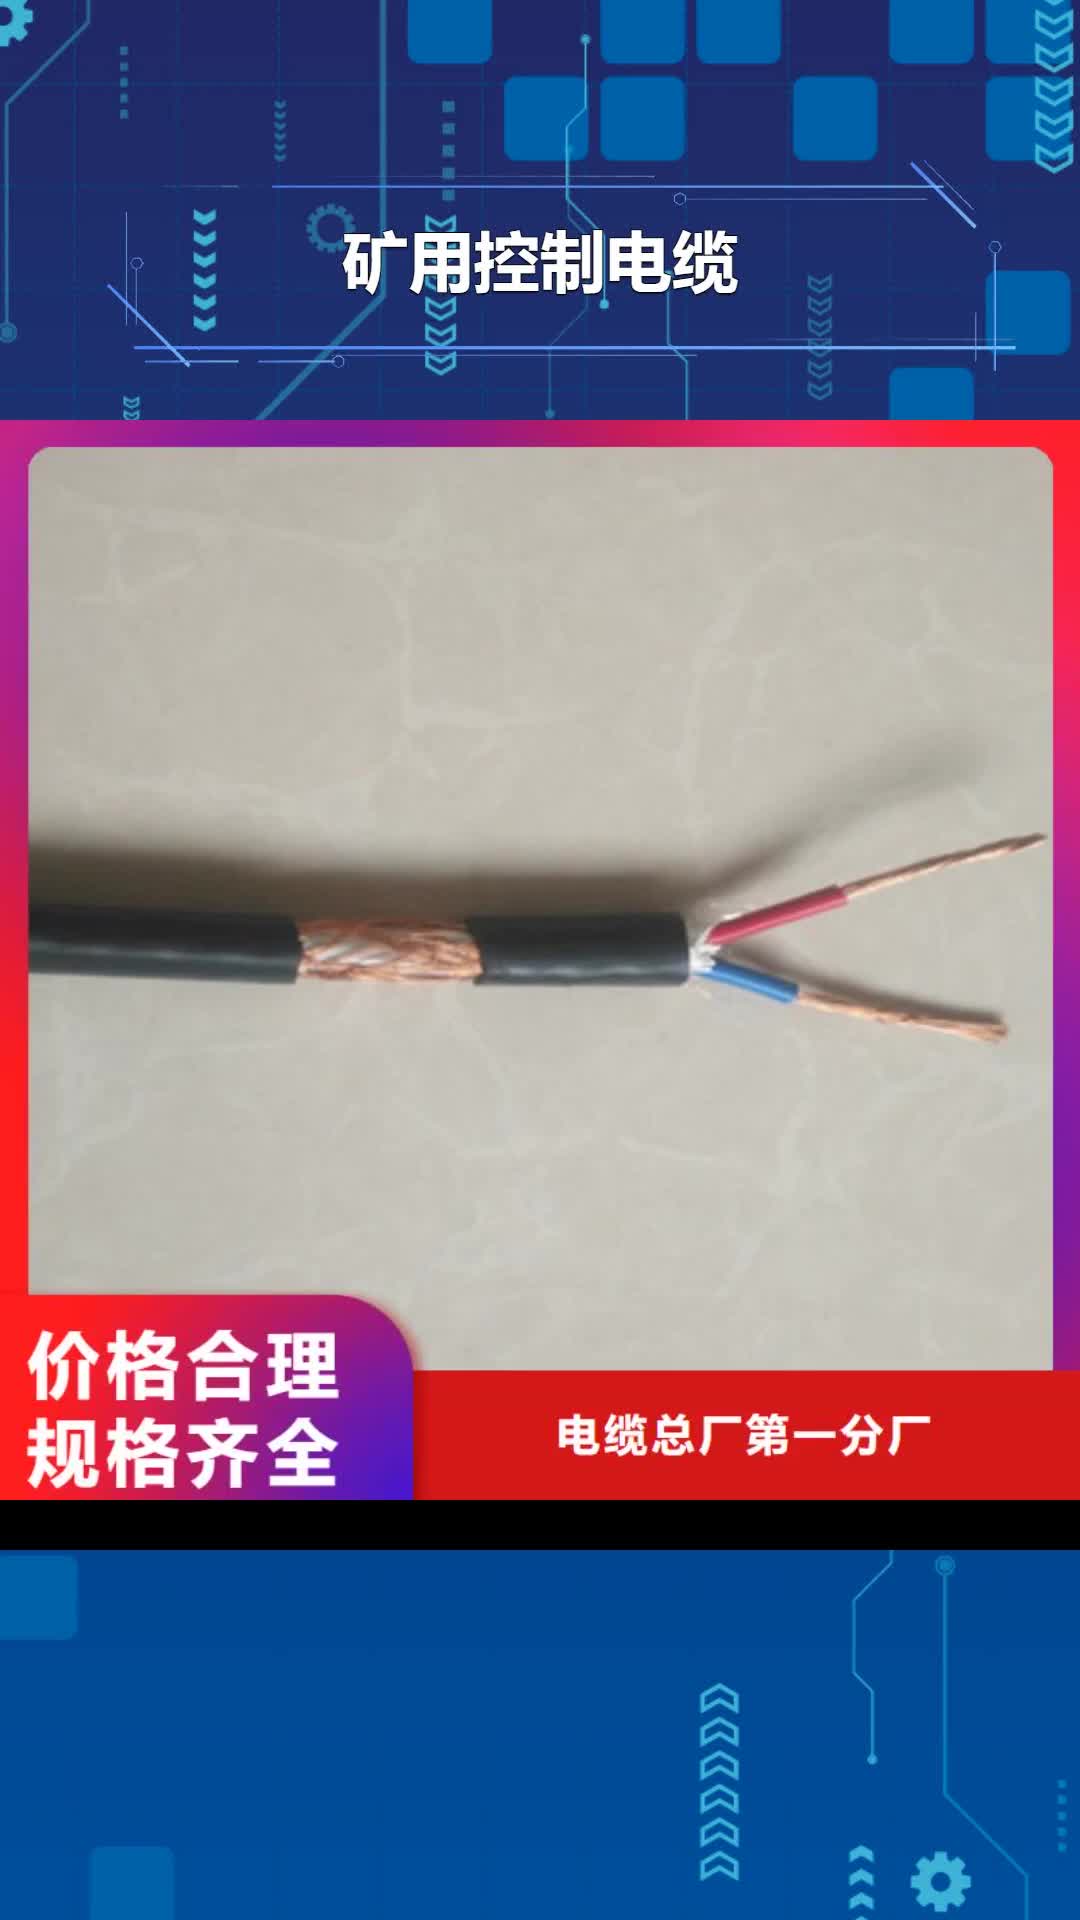 菏泽【矿用控制电缆】_矿用电缆优质工艺